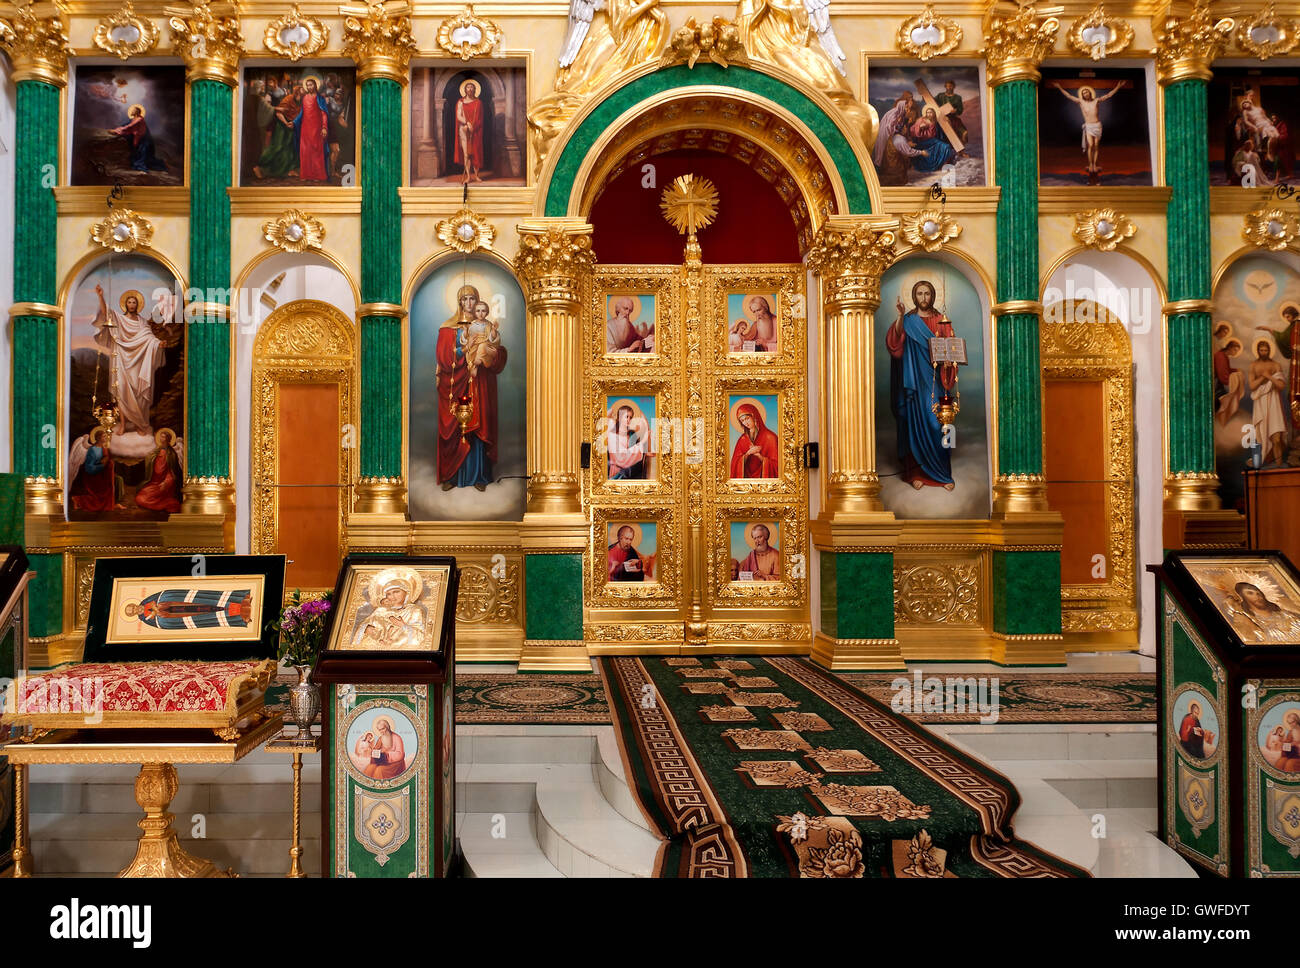 L'architecture religieuse de droit : intérieur d'une église orthodoxe russe dans la région de Tver (Russie) avec chœur, autel (sanctuary) Banque D'Images